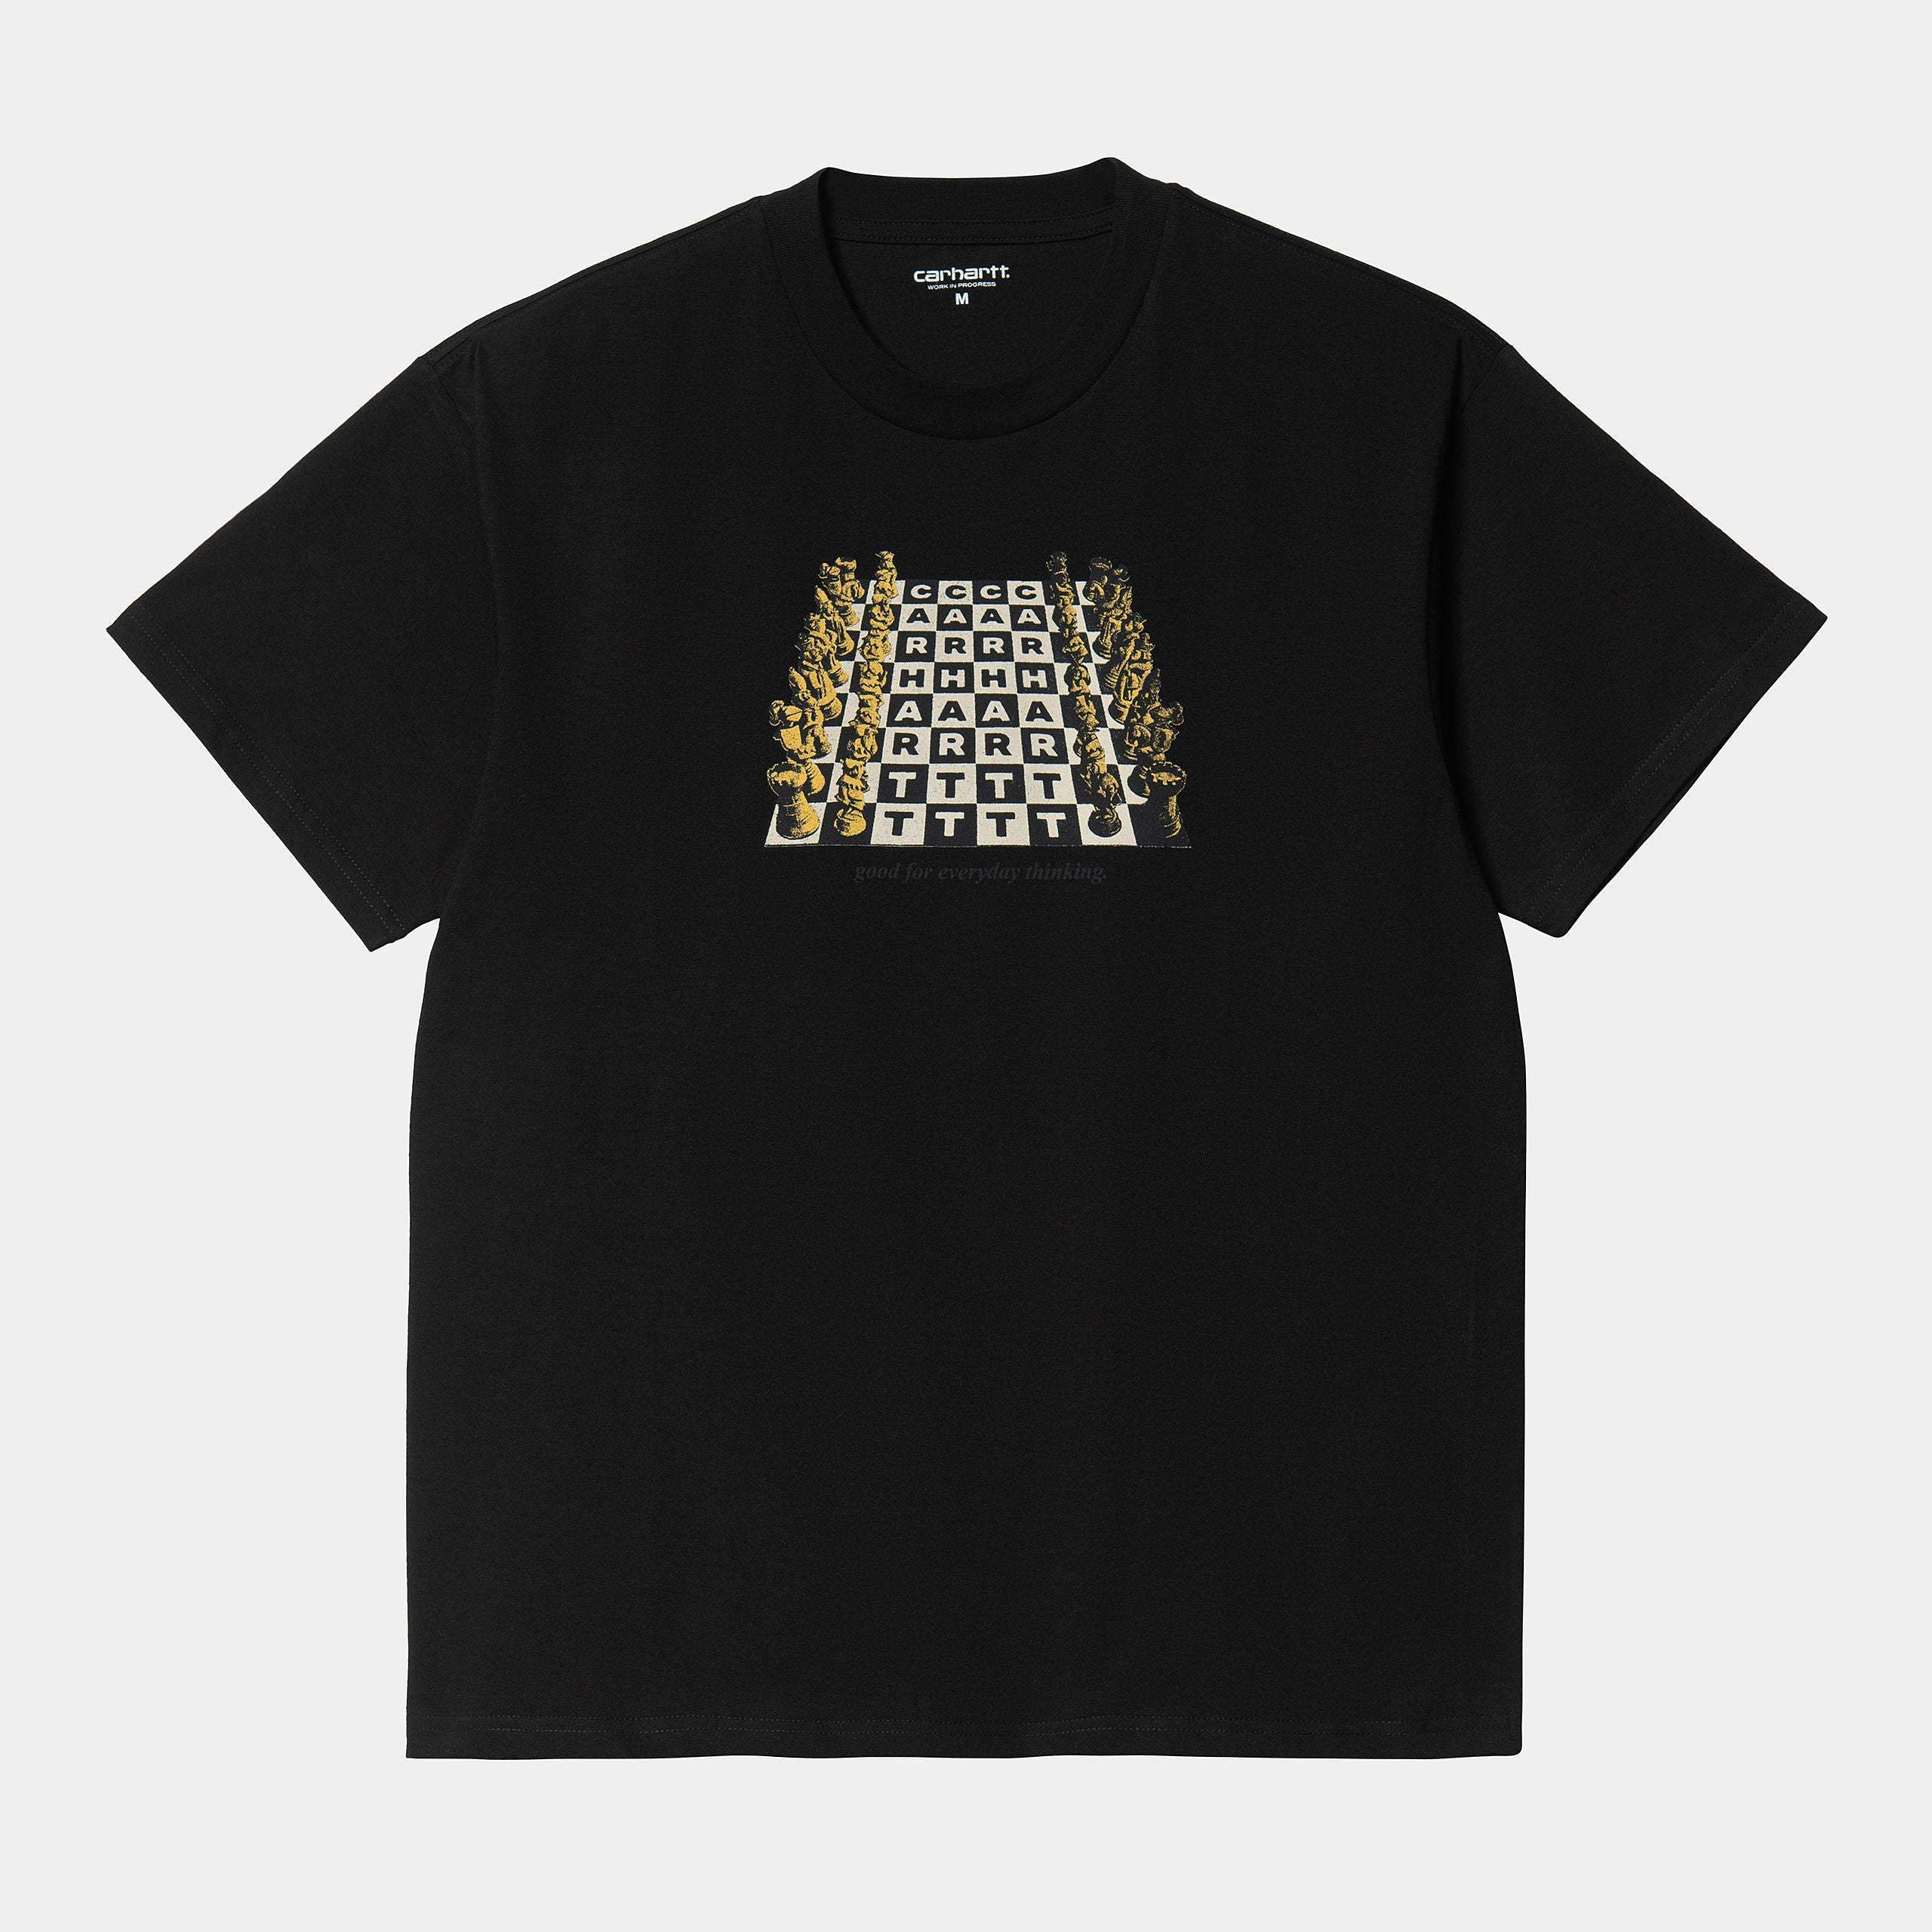 Carhartt T-Shirt S/S Chessboard